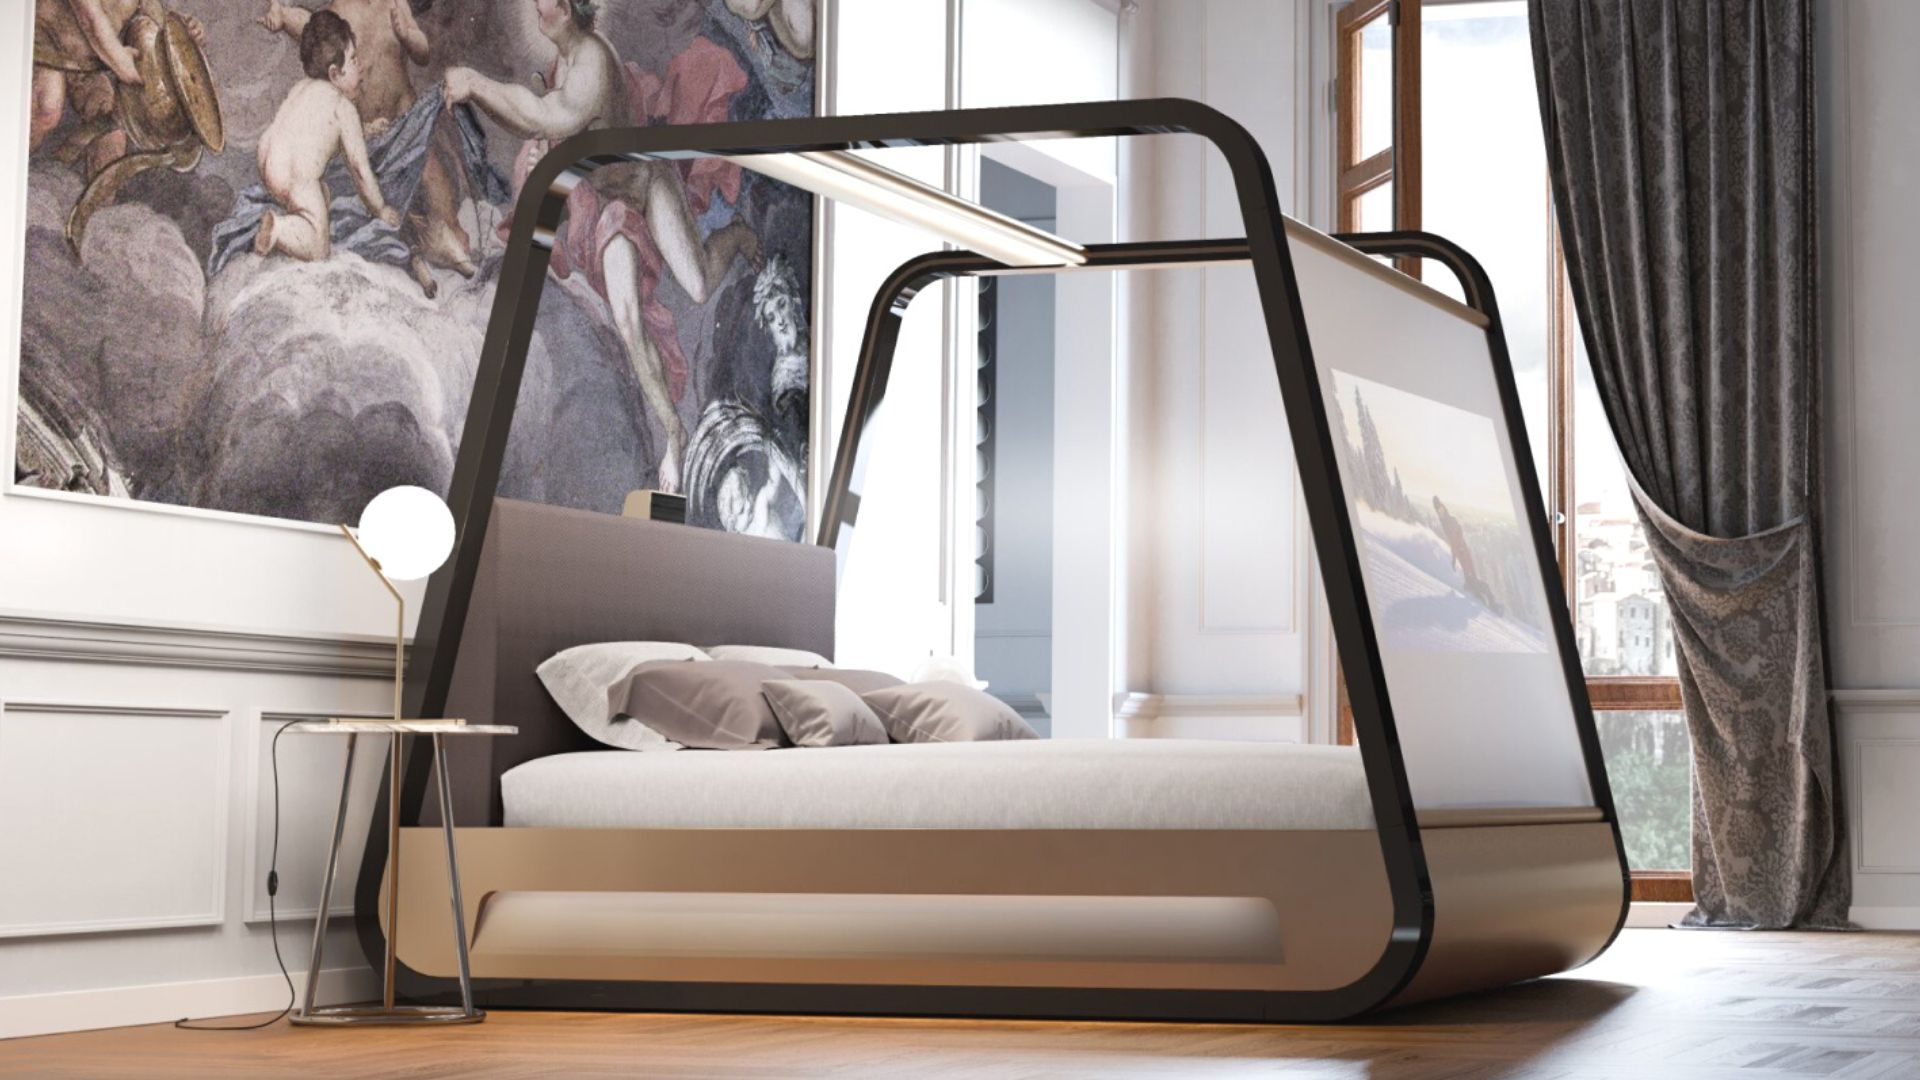 Giường ngủ kết hợp cùng công nghệ hiện đại theo phong cách Hitech | Nguồn: Hi Interior.